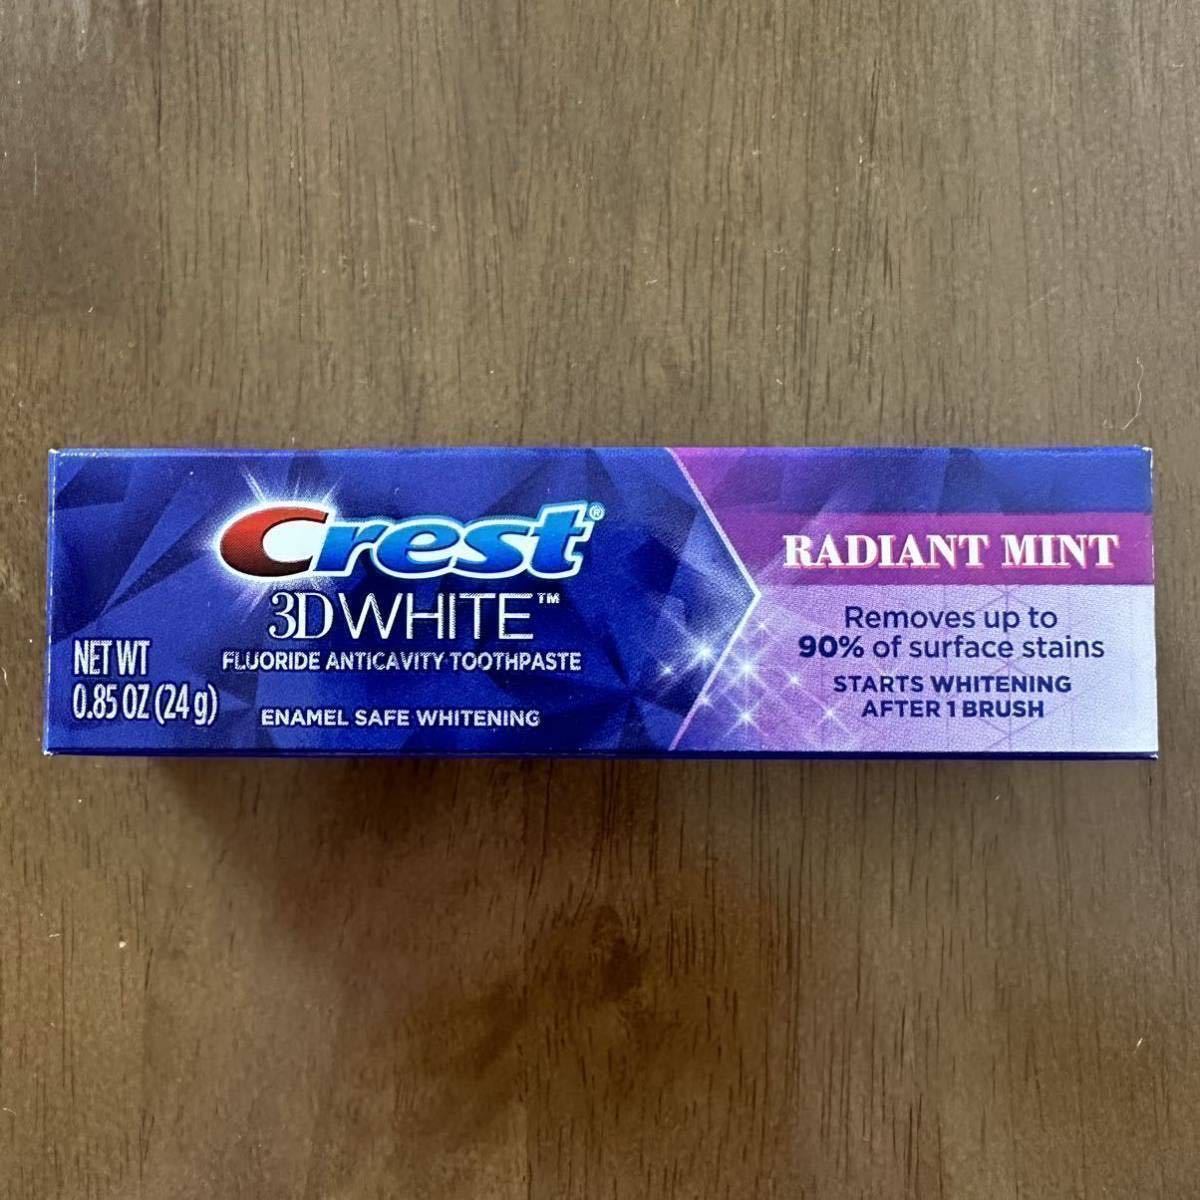 アメリカ 歯磨き粉 クレスト 3D ホワイト ラディアントミント ホワイトニング Crest 3D White Radian mint Toothpaste 24g 旅行携帯用 新品の画像1